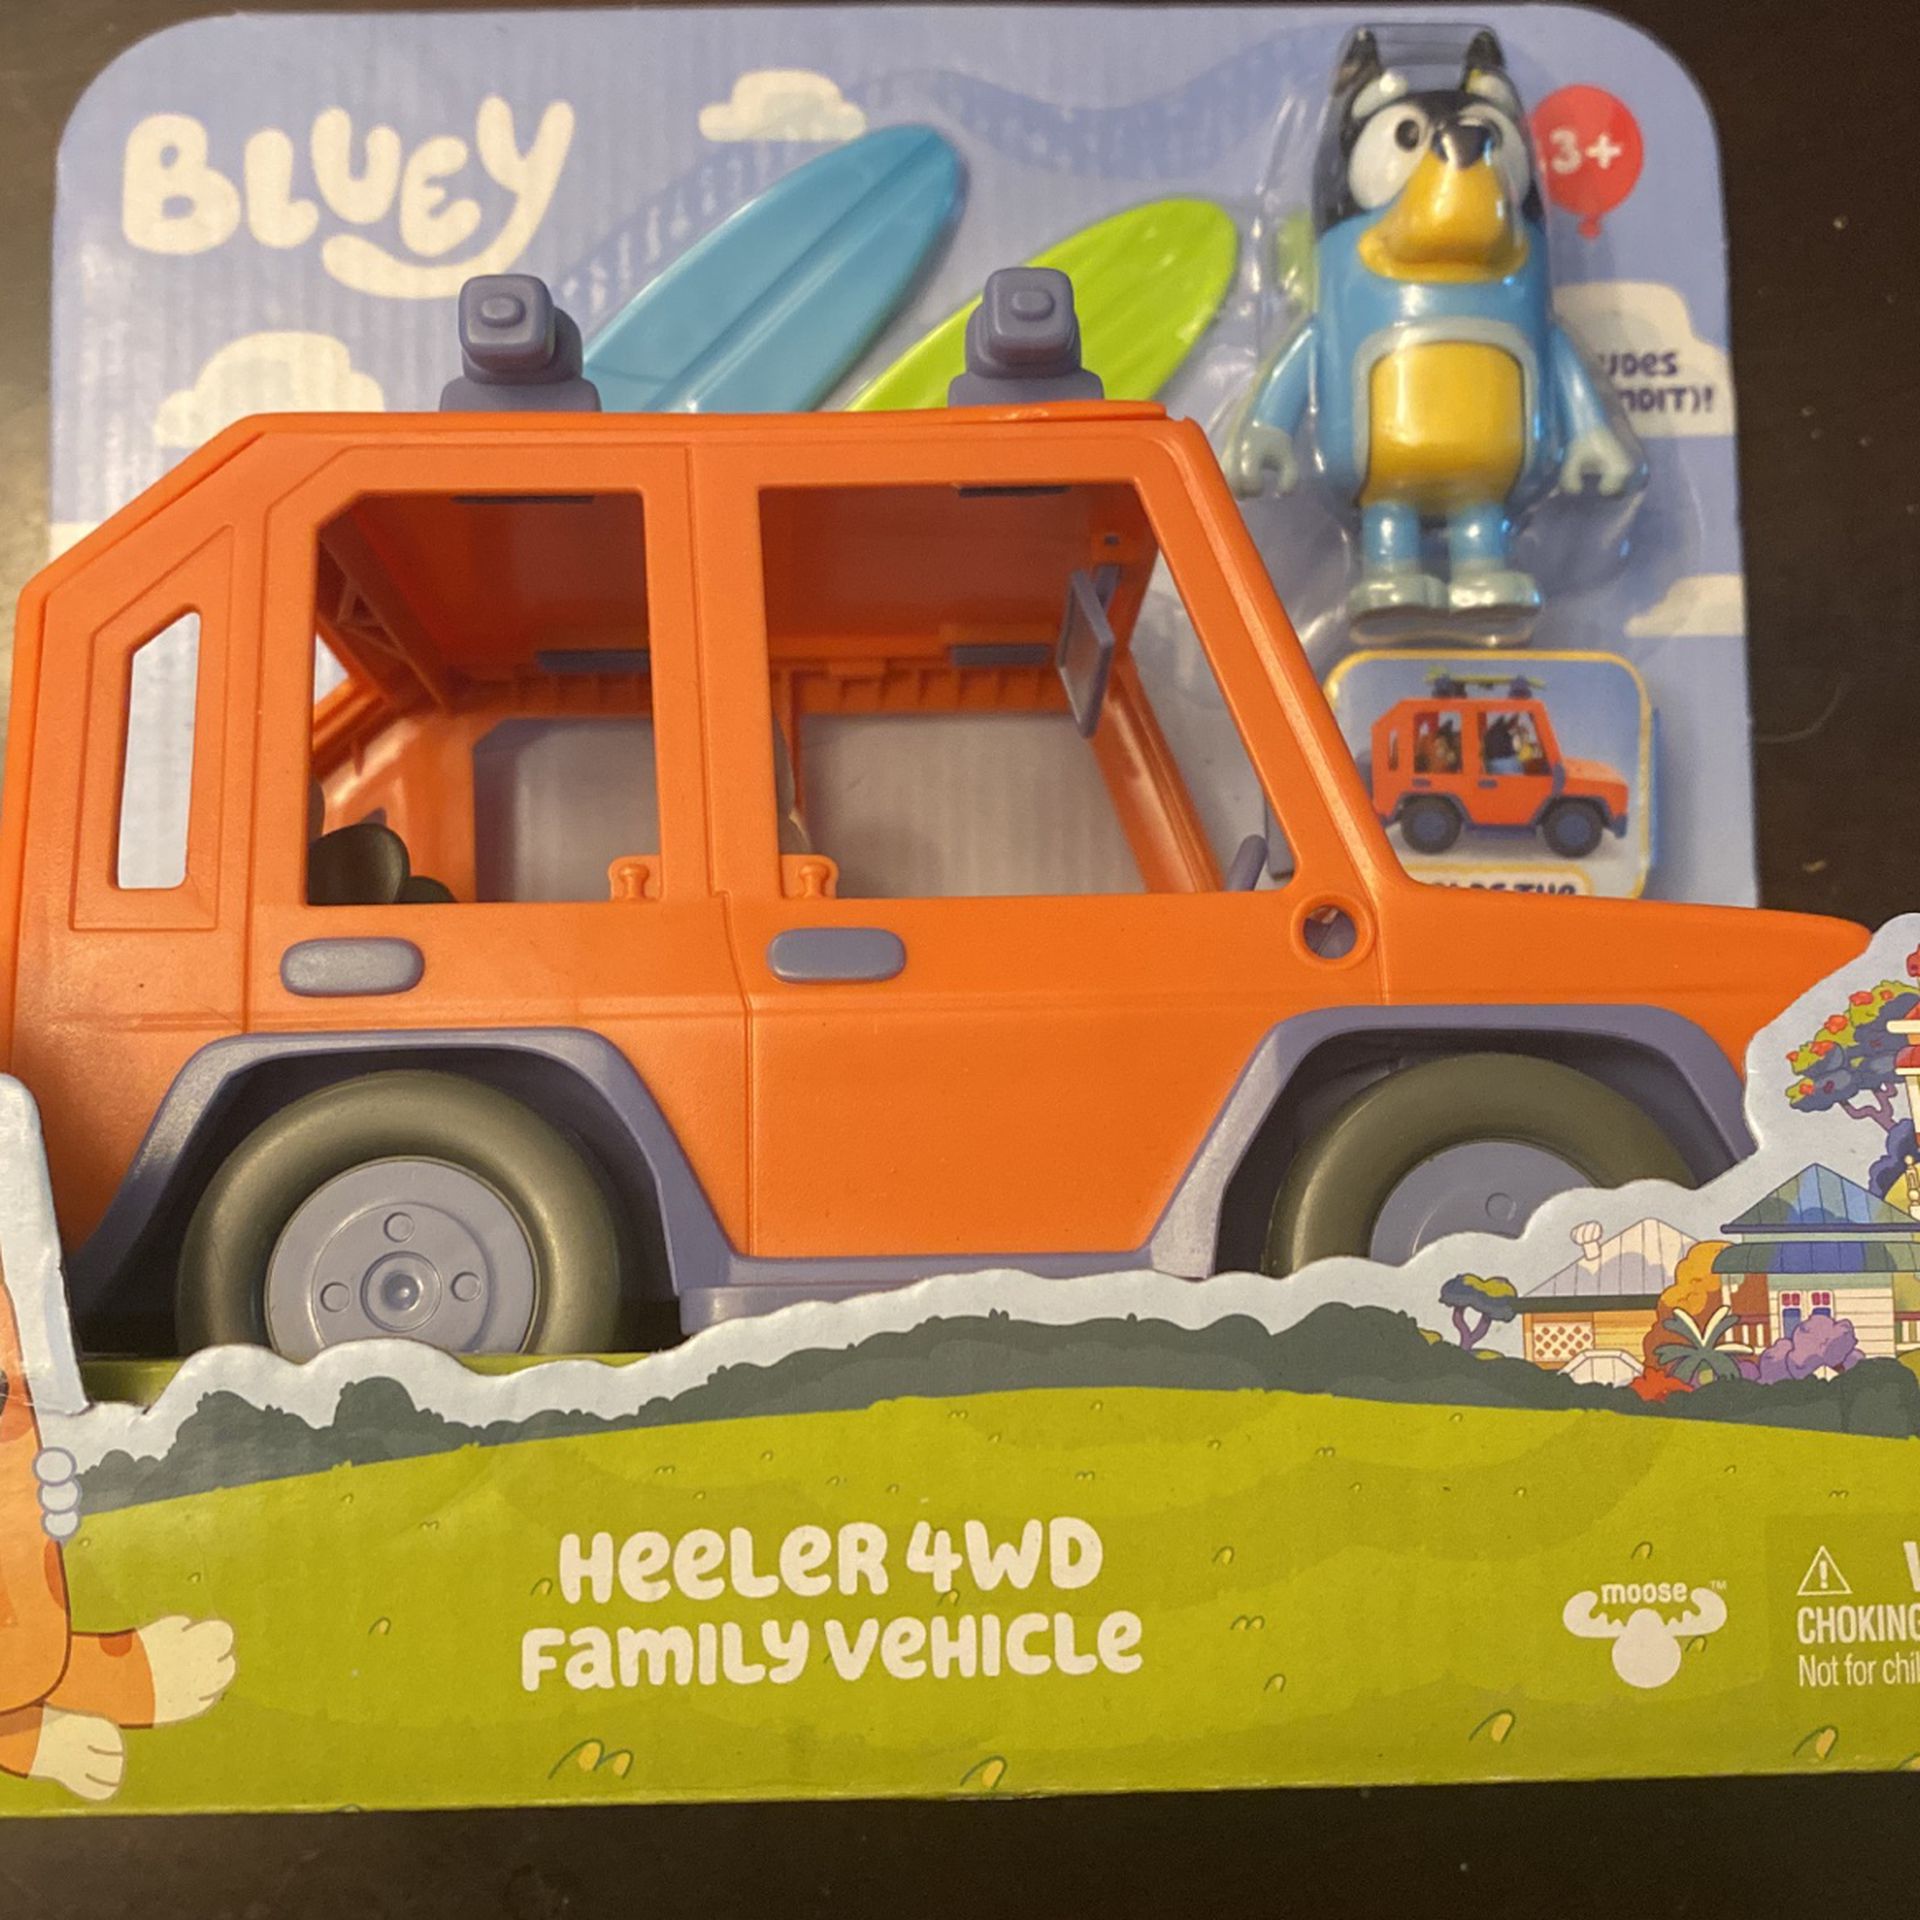 Bluey -Heeler 4wd Family Vehicle 